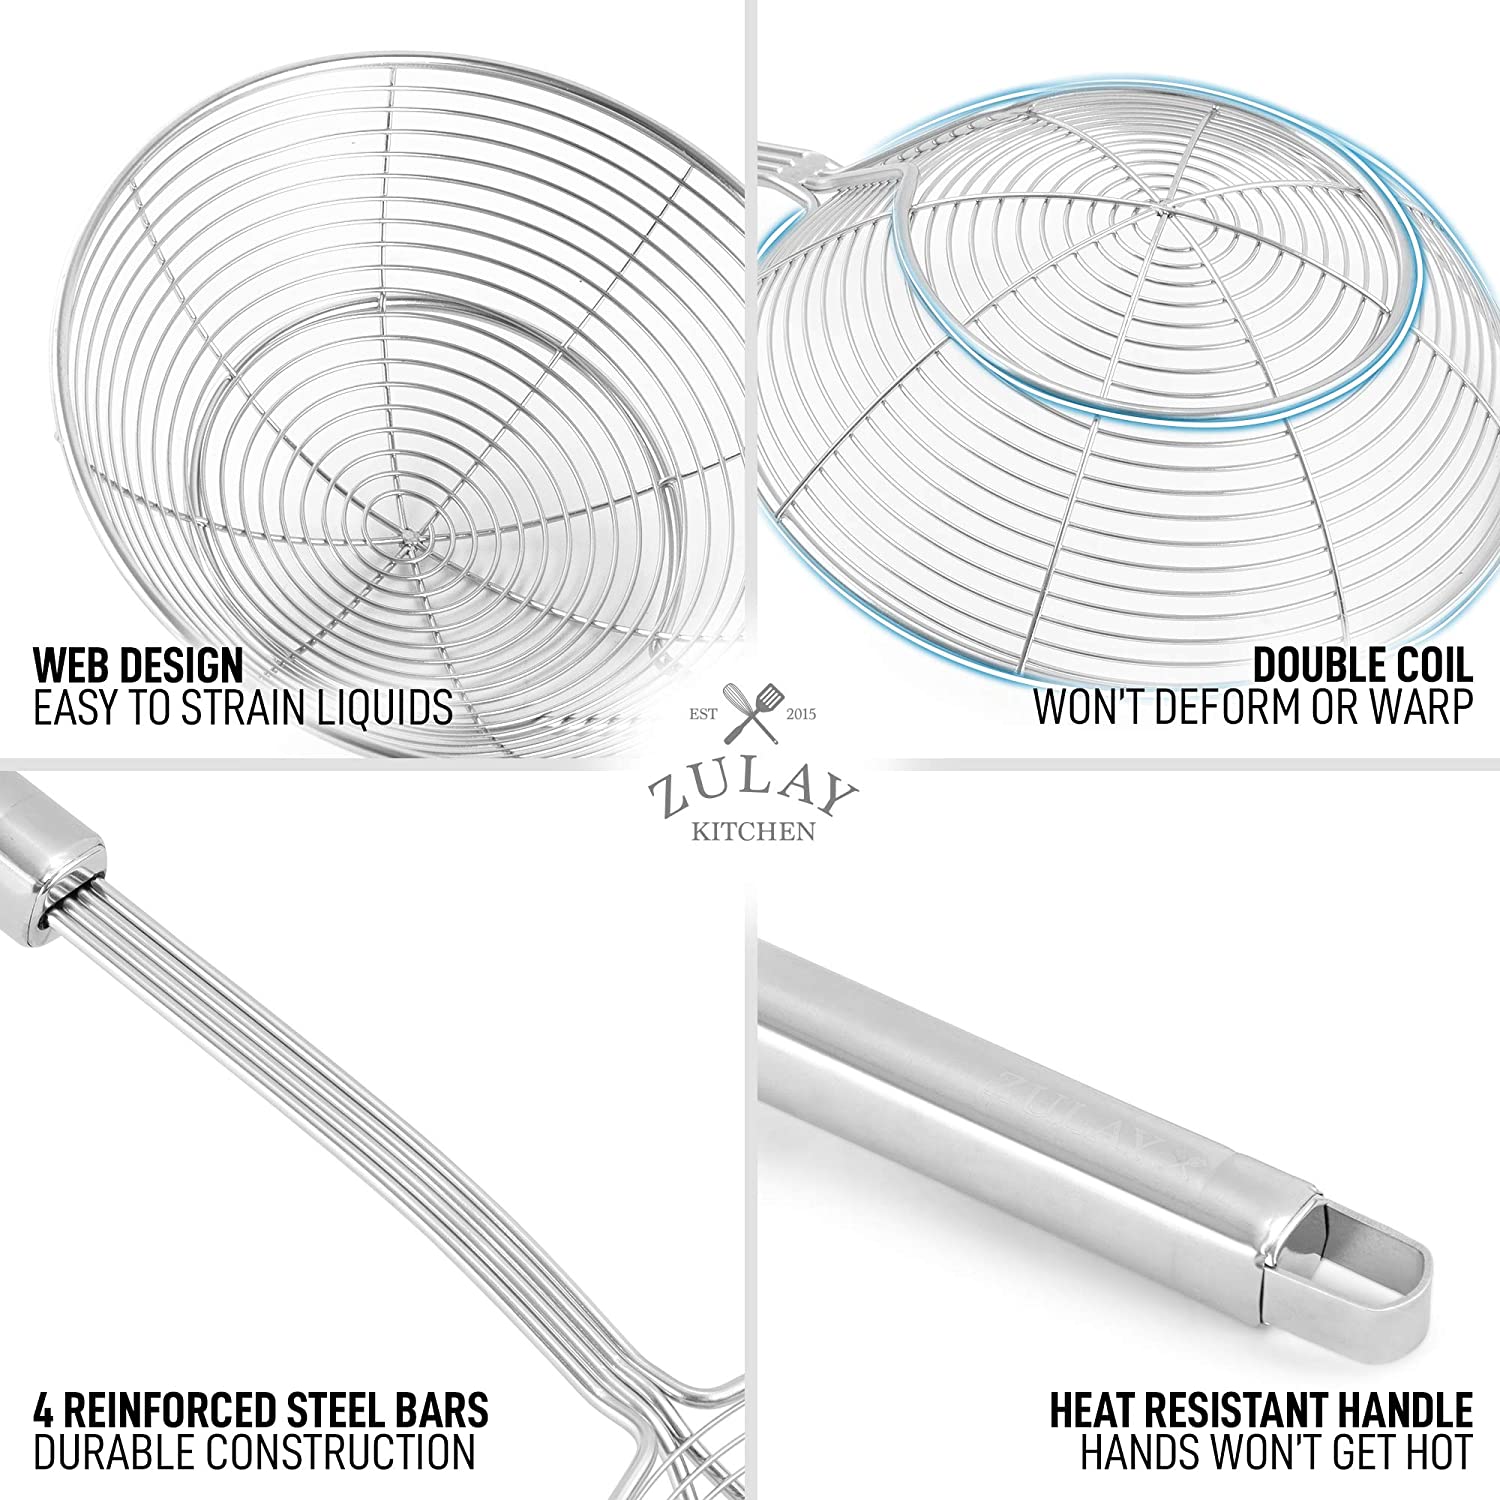 Spiral Wire Mesh Skimmer Spoon Ladle - Zulay KitchenZulay Kitchen